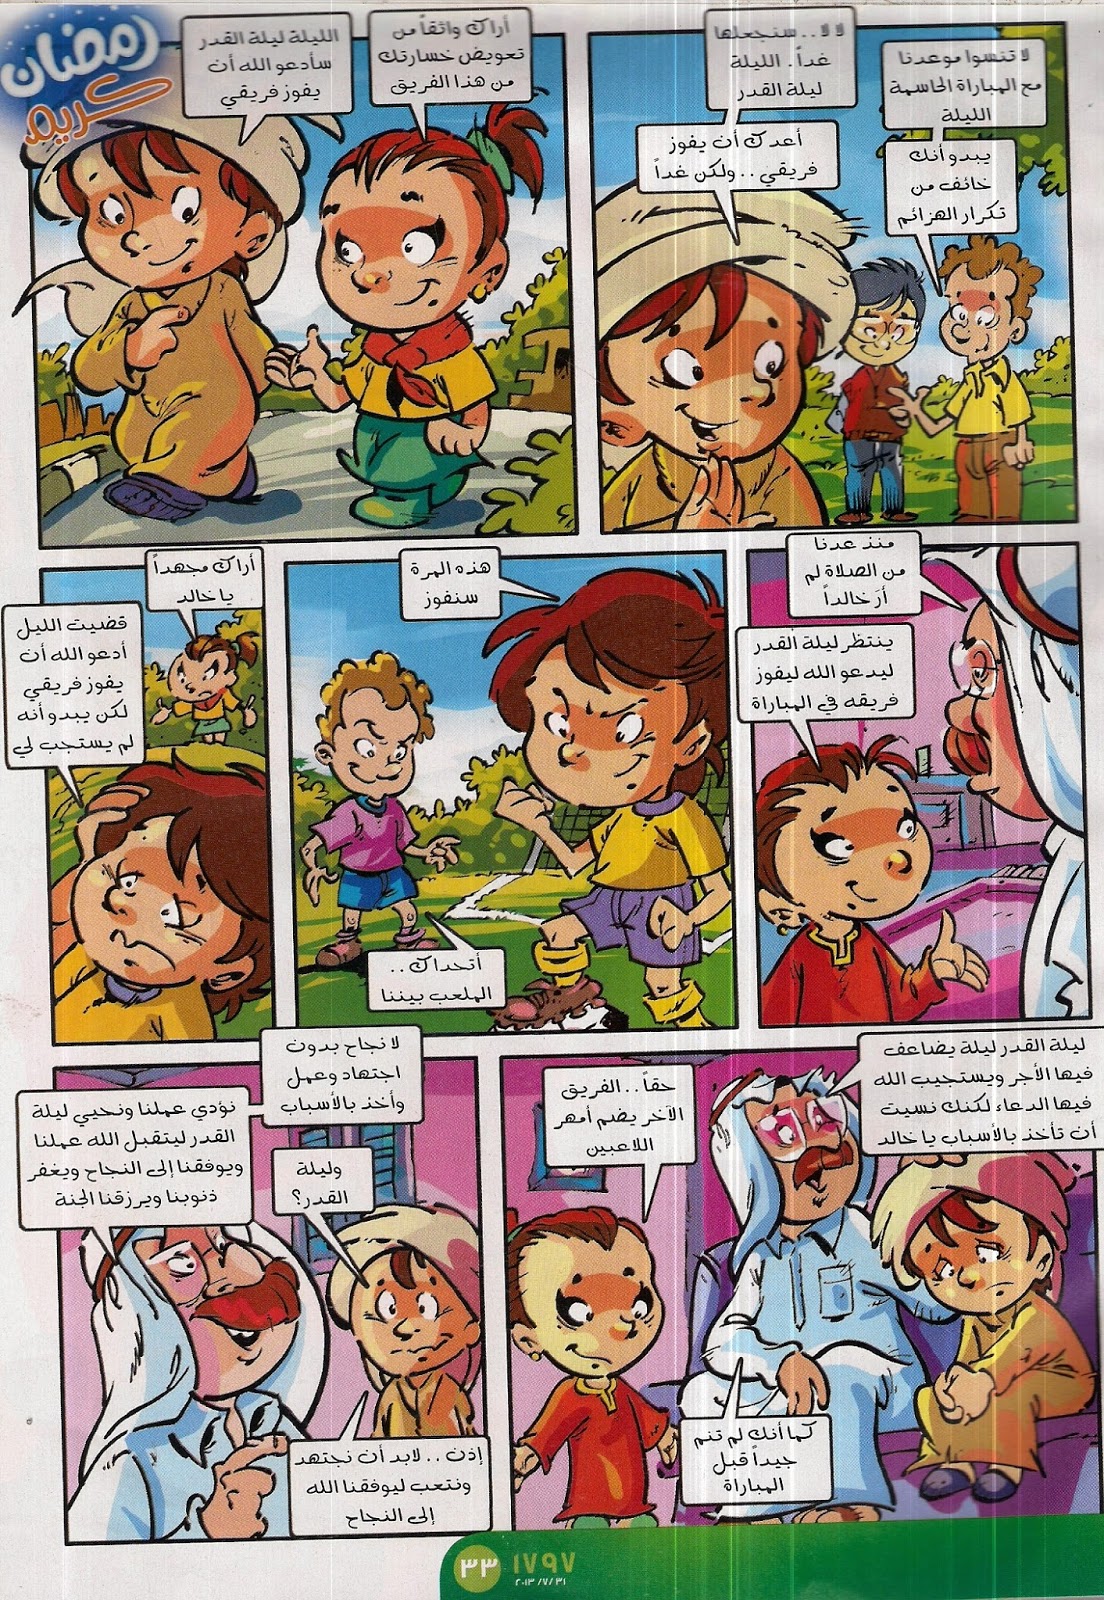 "يوميات صائم صغير"5 سيناريو للأطفال بقلم: أحمد طوسون   Scan0018